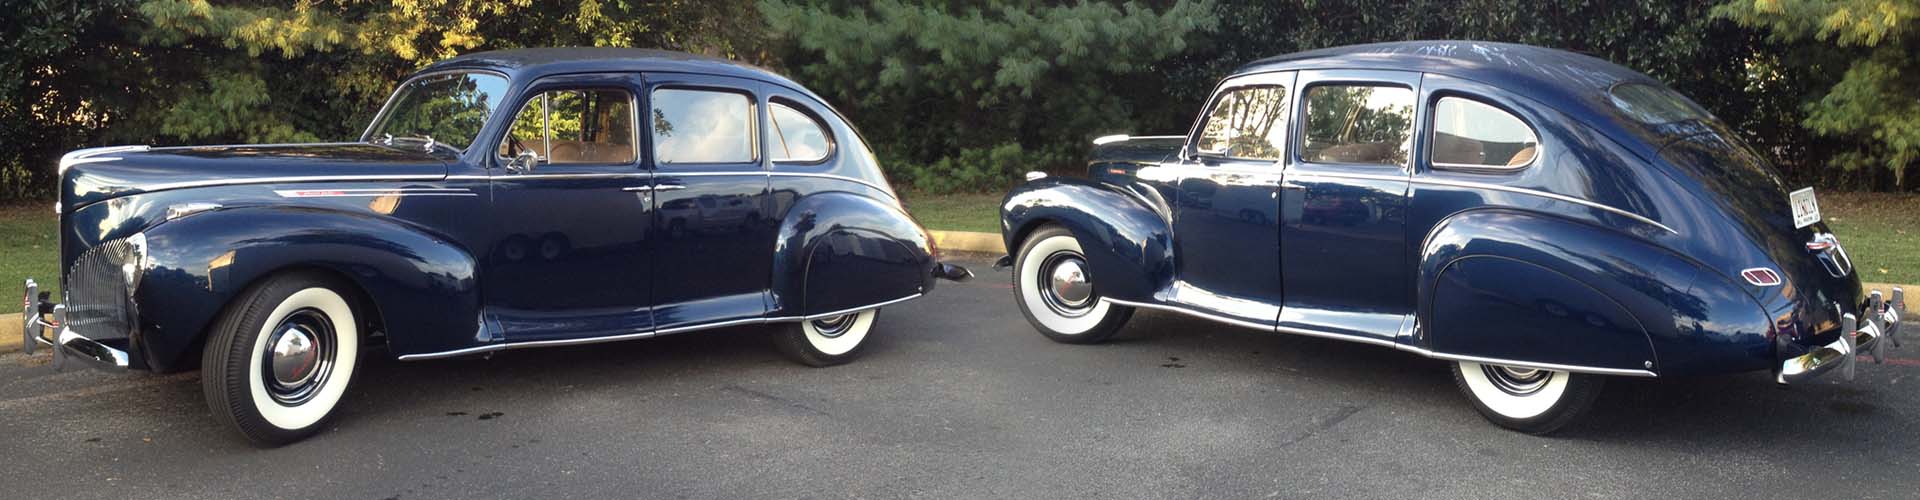 Classic Car Wedding Transportation 1940 Lincoln Zephyr